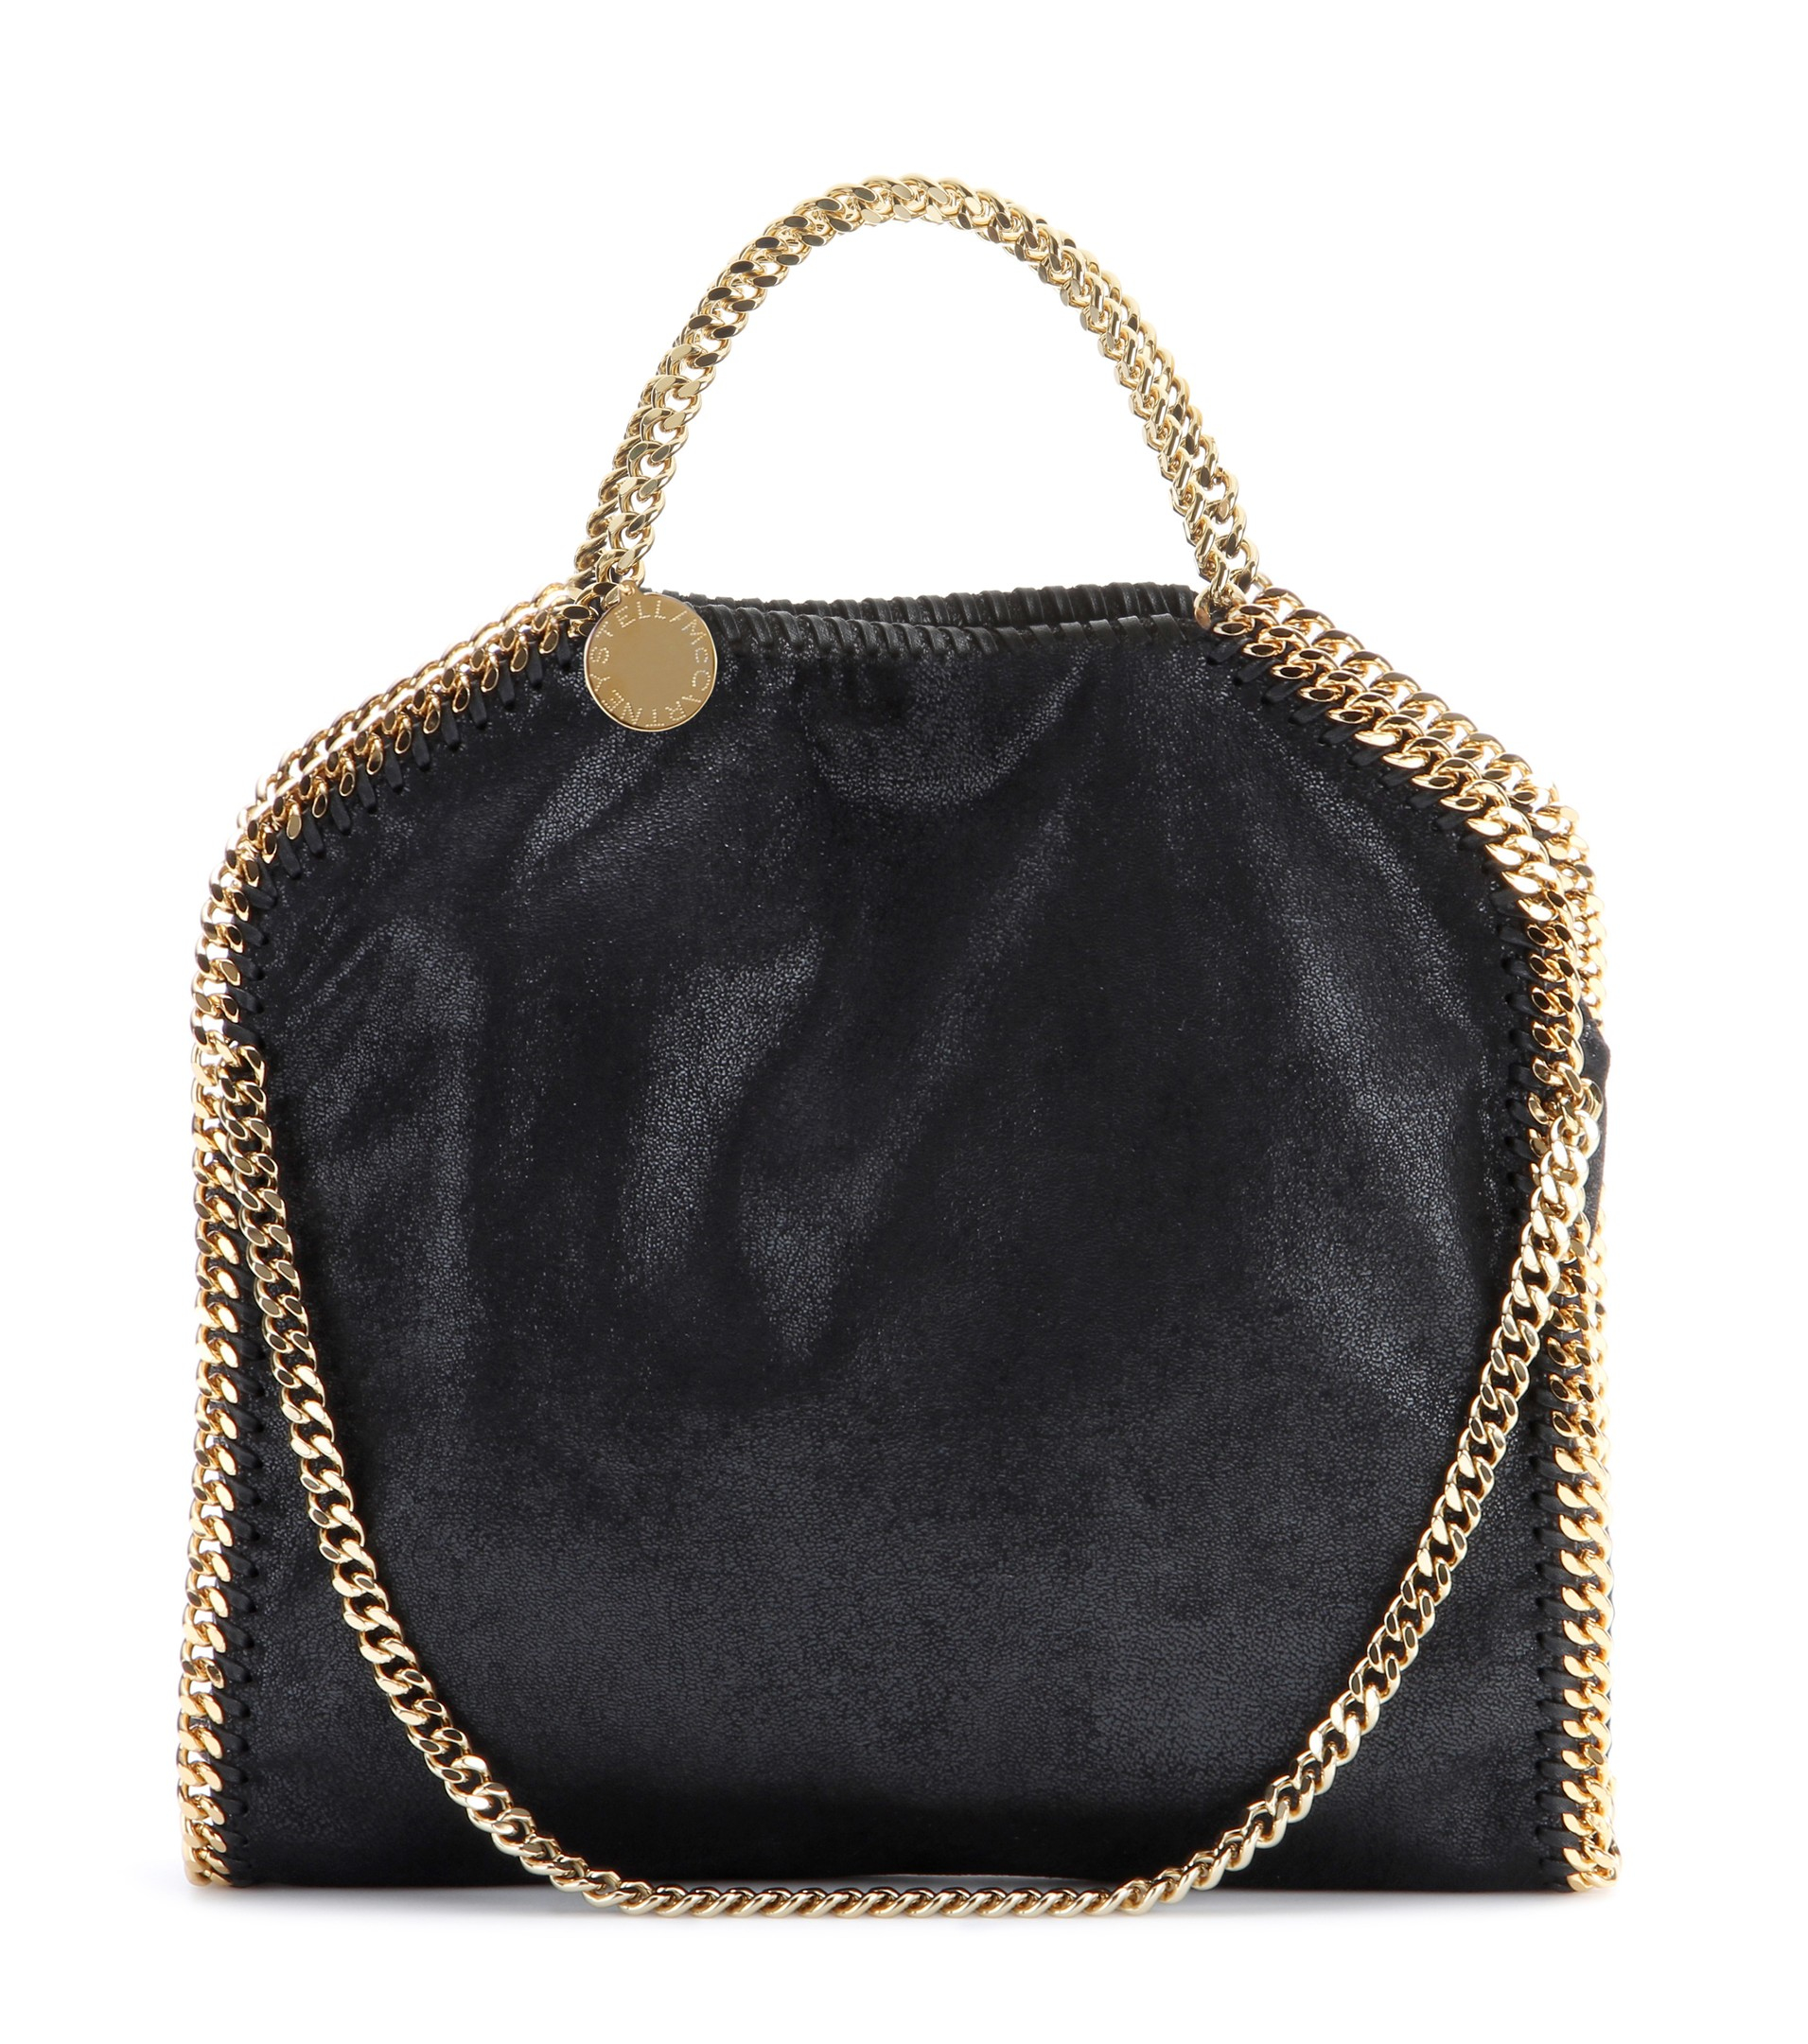 Stella McCartney Falabella Small Shoulder Bag in Black - Lyst